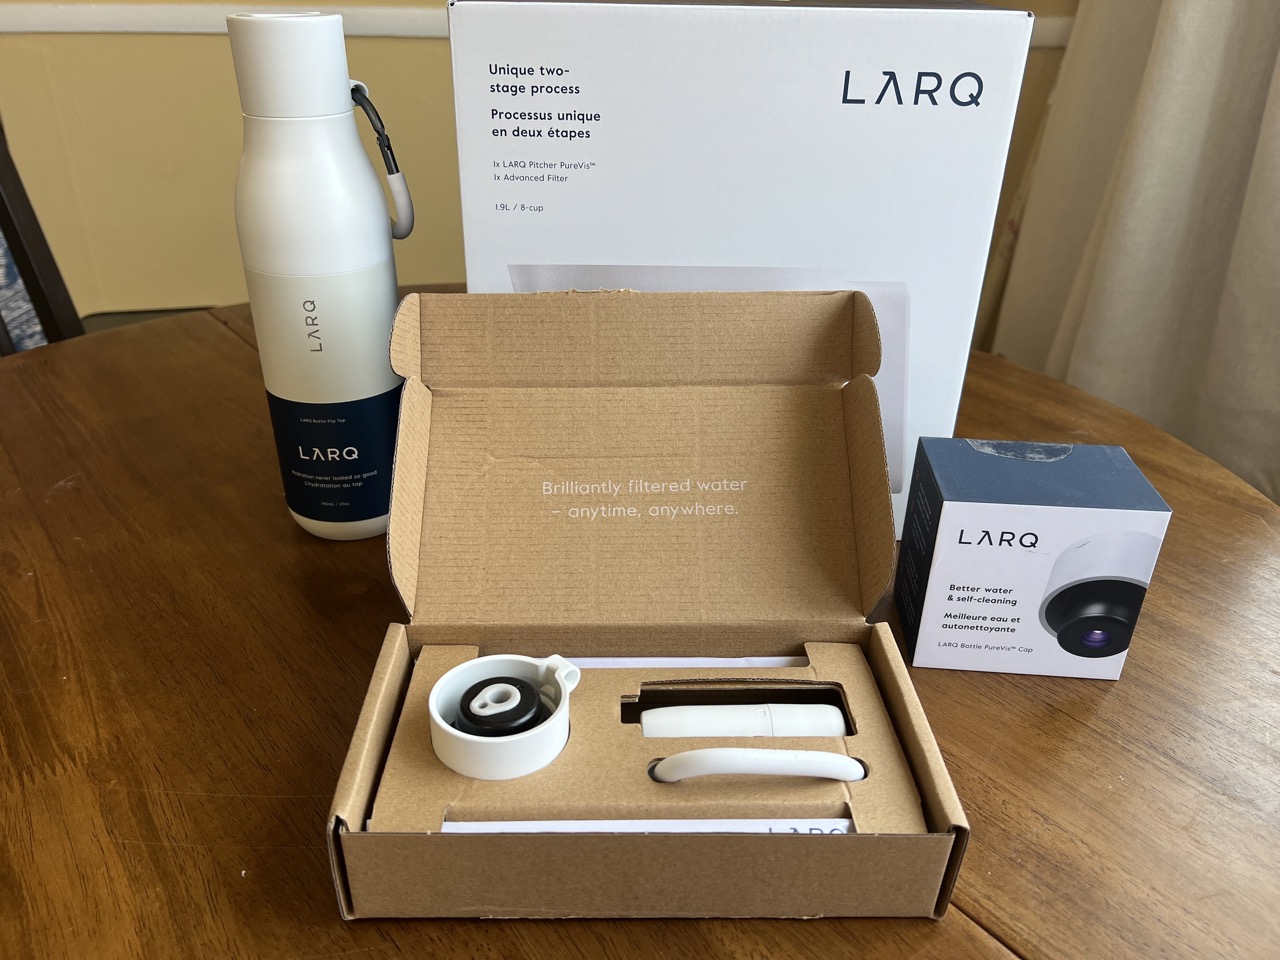 The LARQ bottle packaging